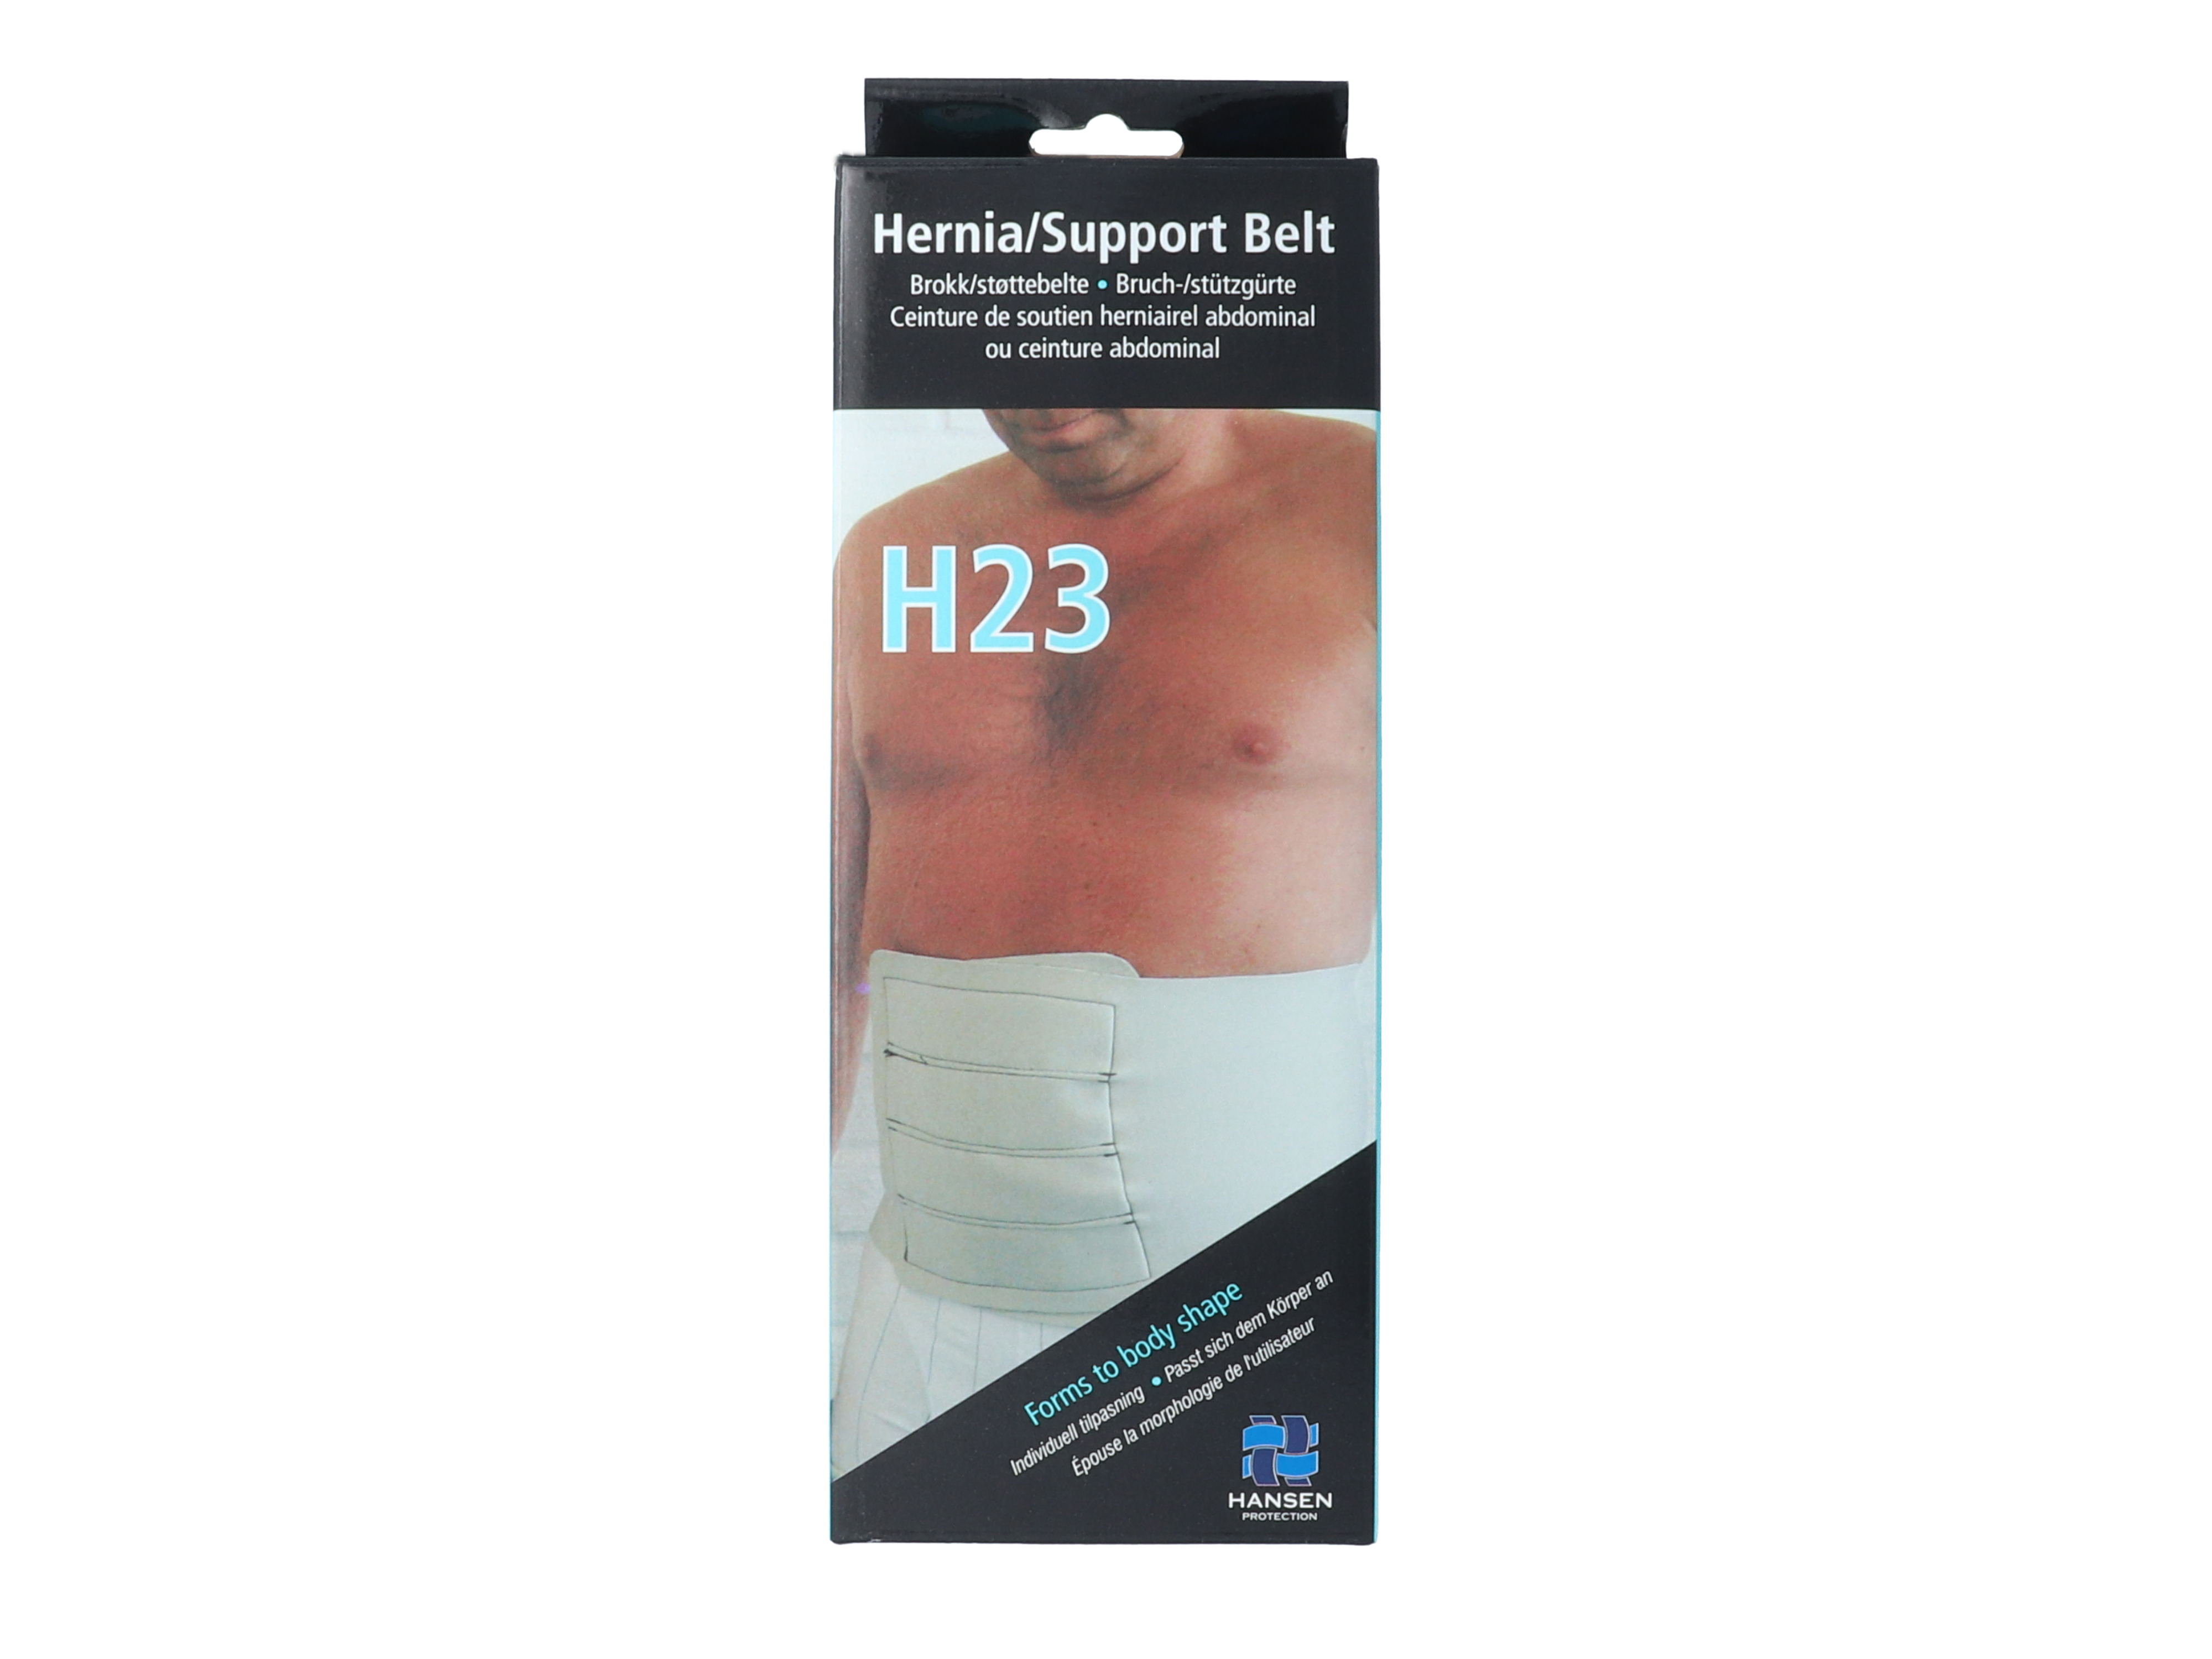 Hansen Protection HH brokk/støttebelte H23, str XS, omkrets 7 0cm, 1 stk.